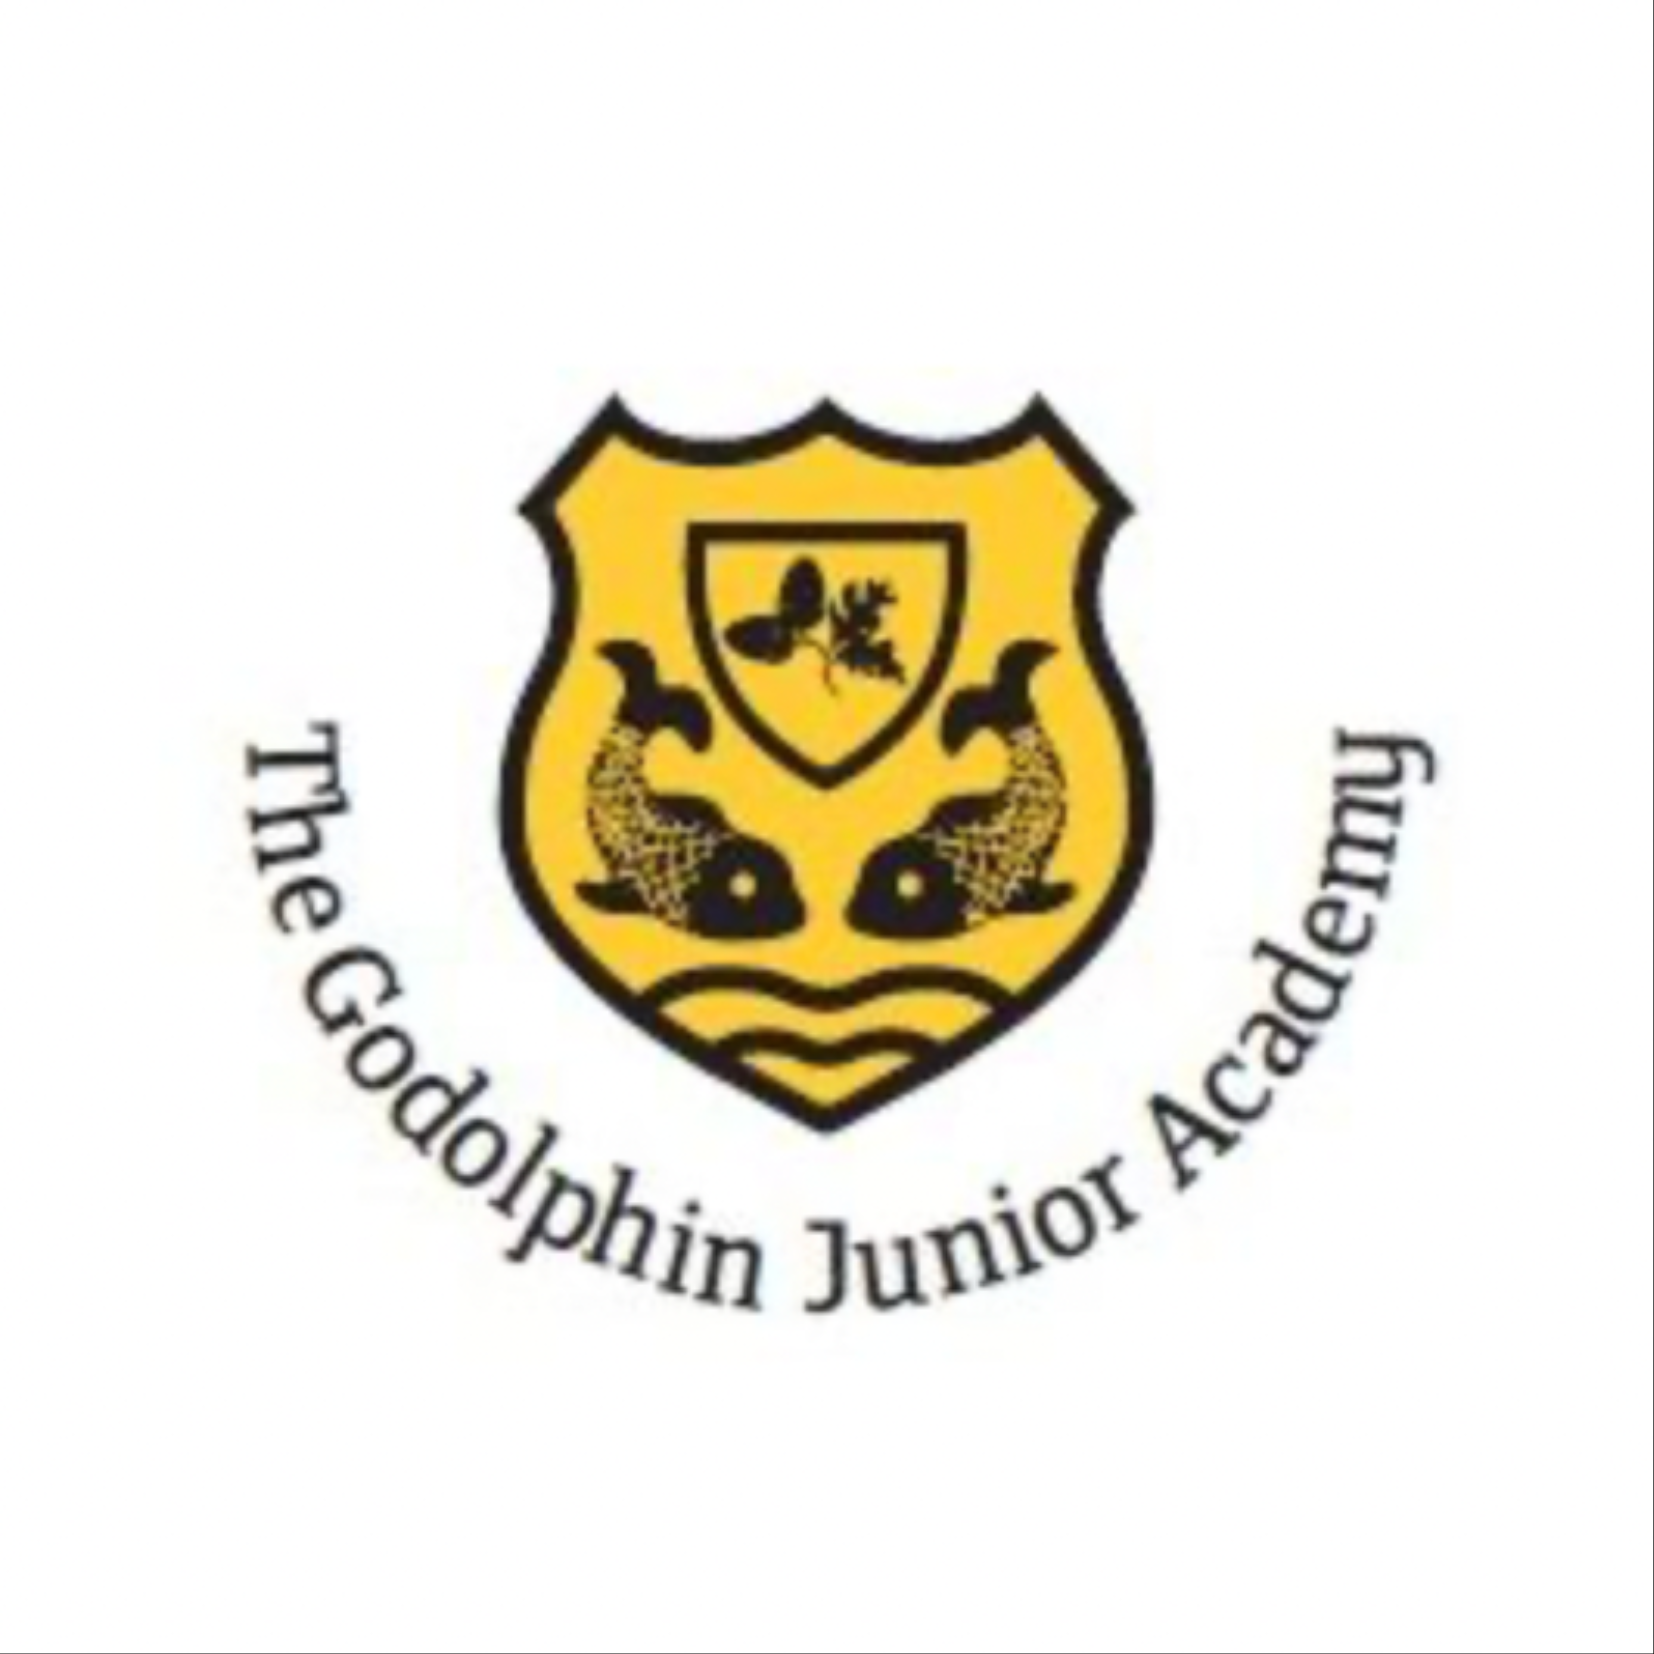 The Godolphin Junior Academy